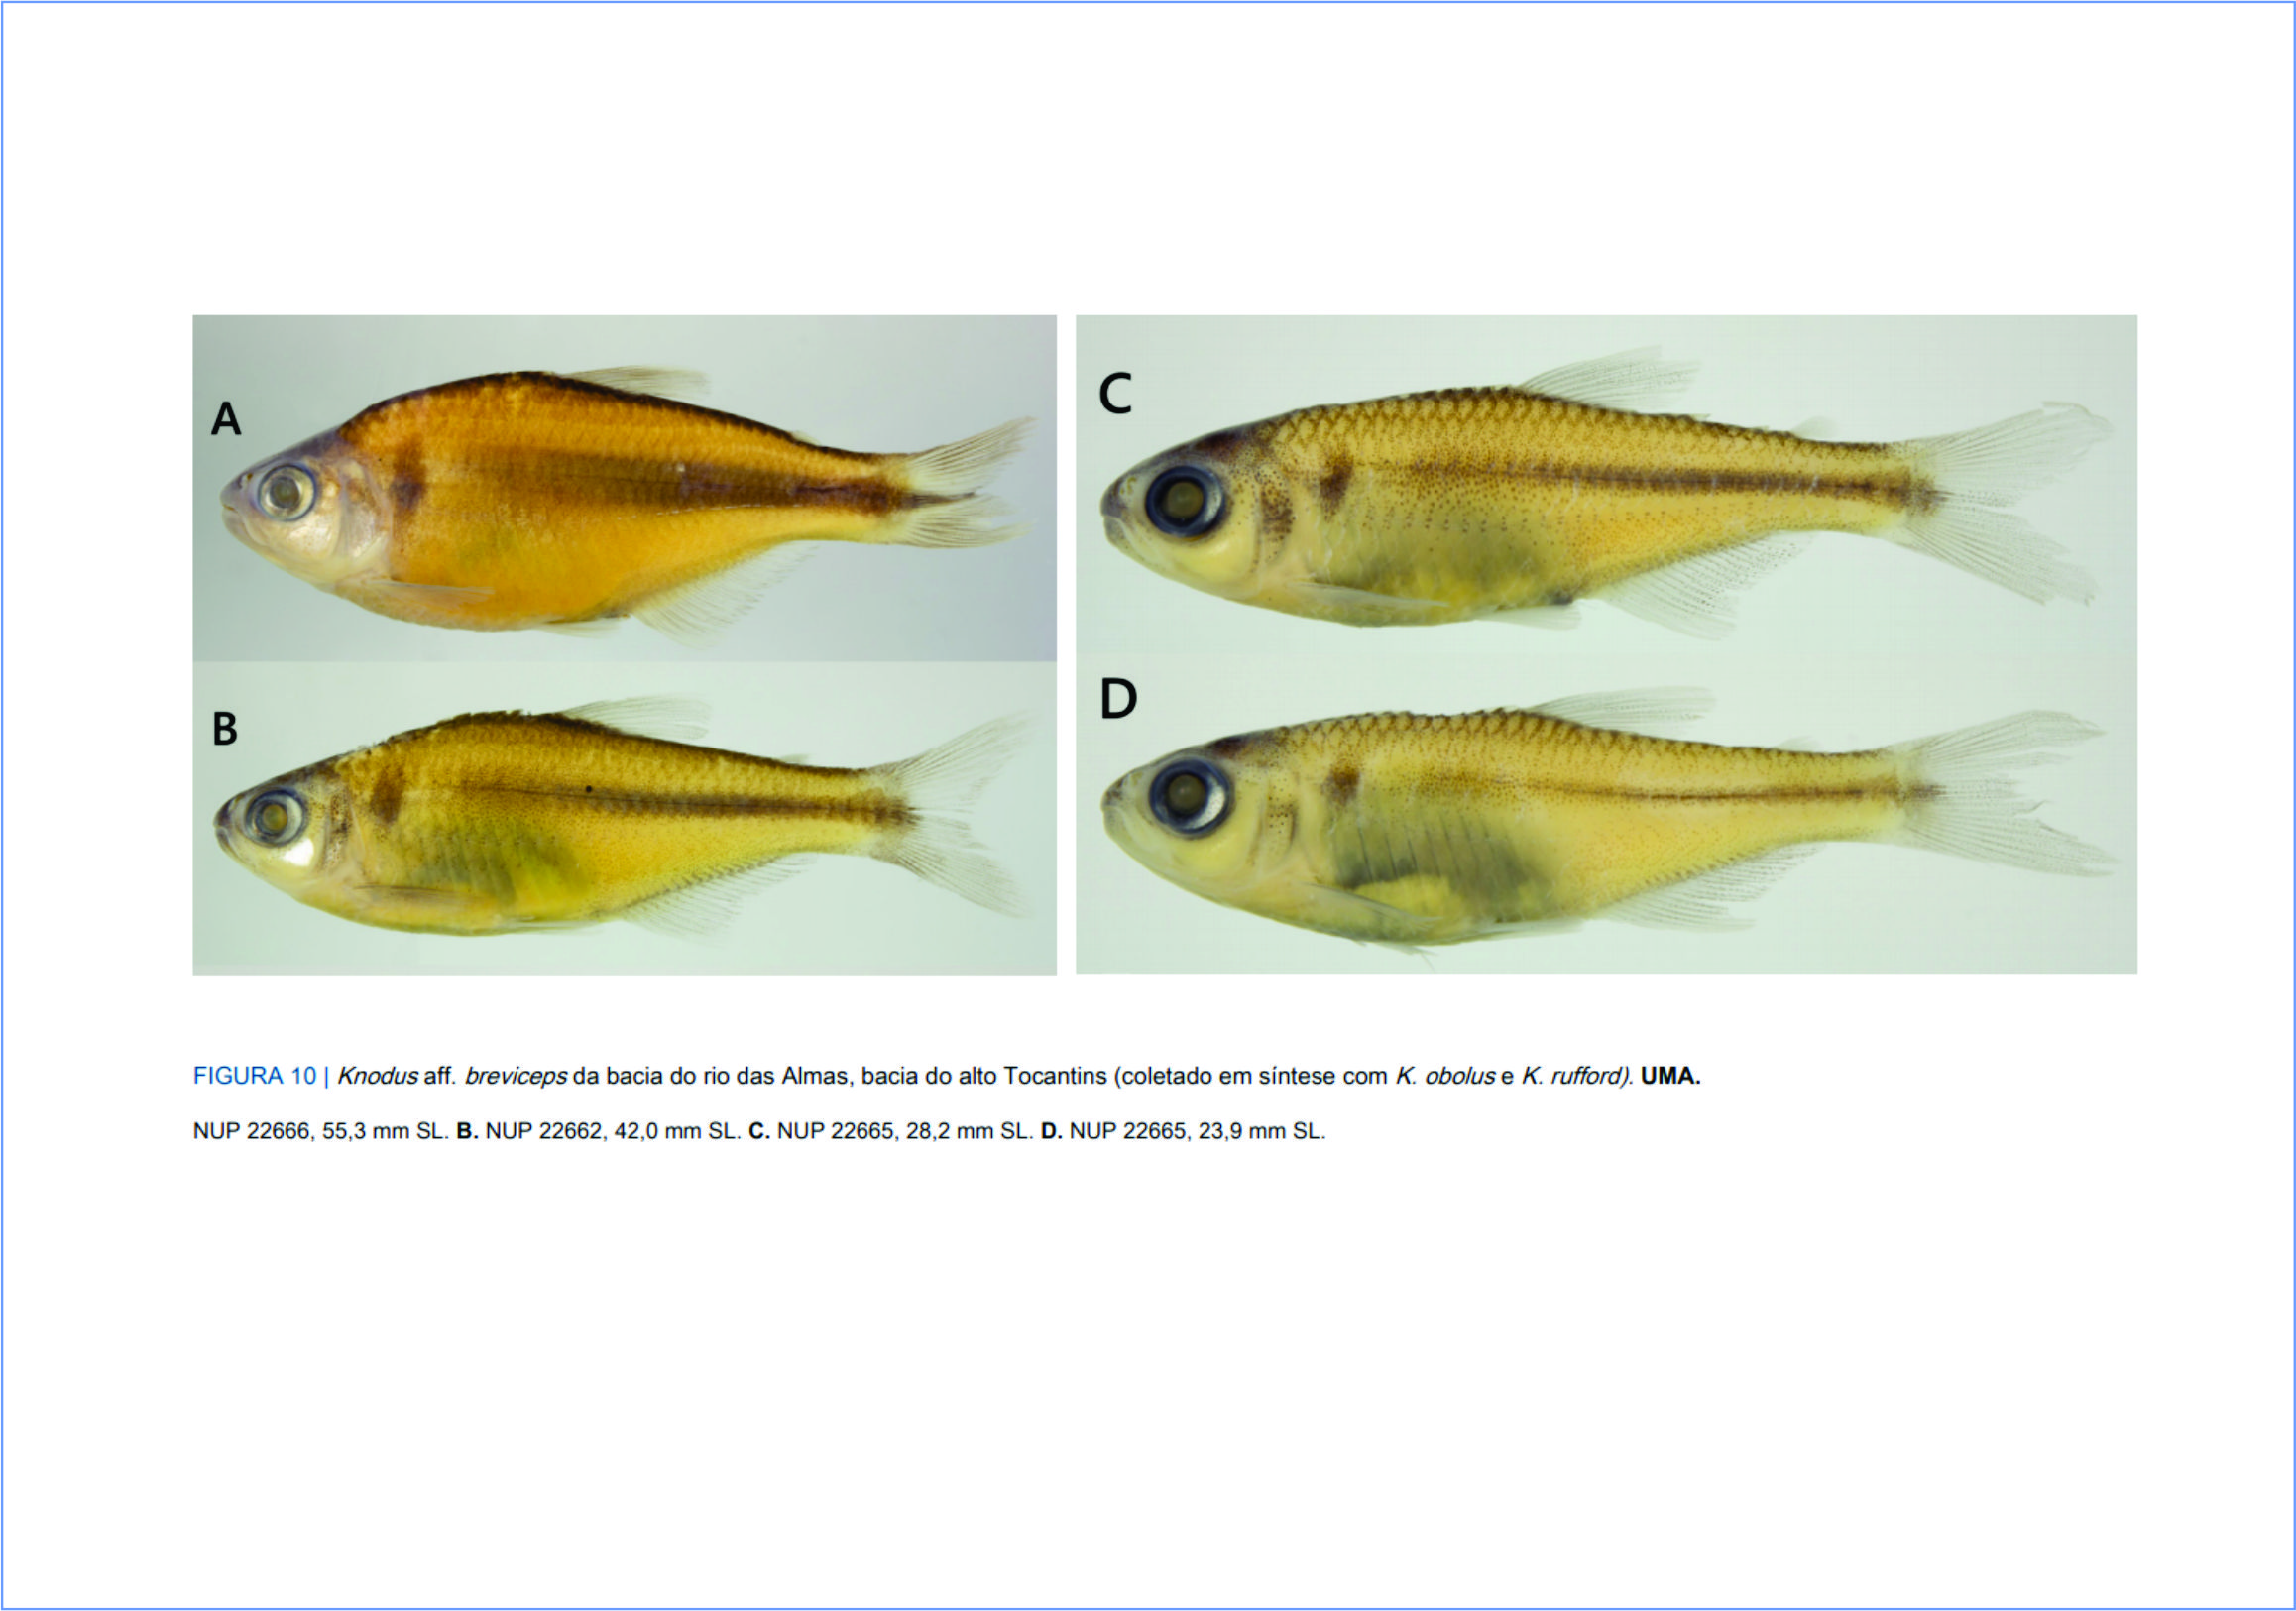 Pesquisa revela duas novas espécies de peixes na bacia do alto rio Tocantins